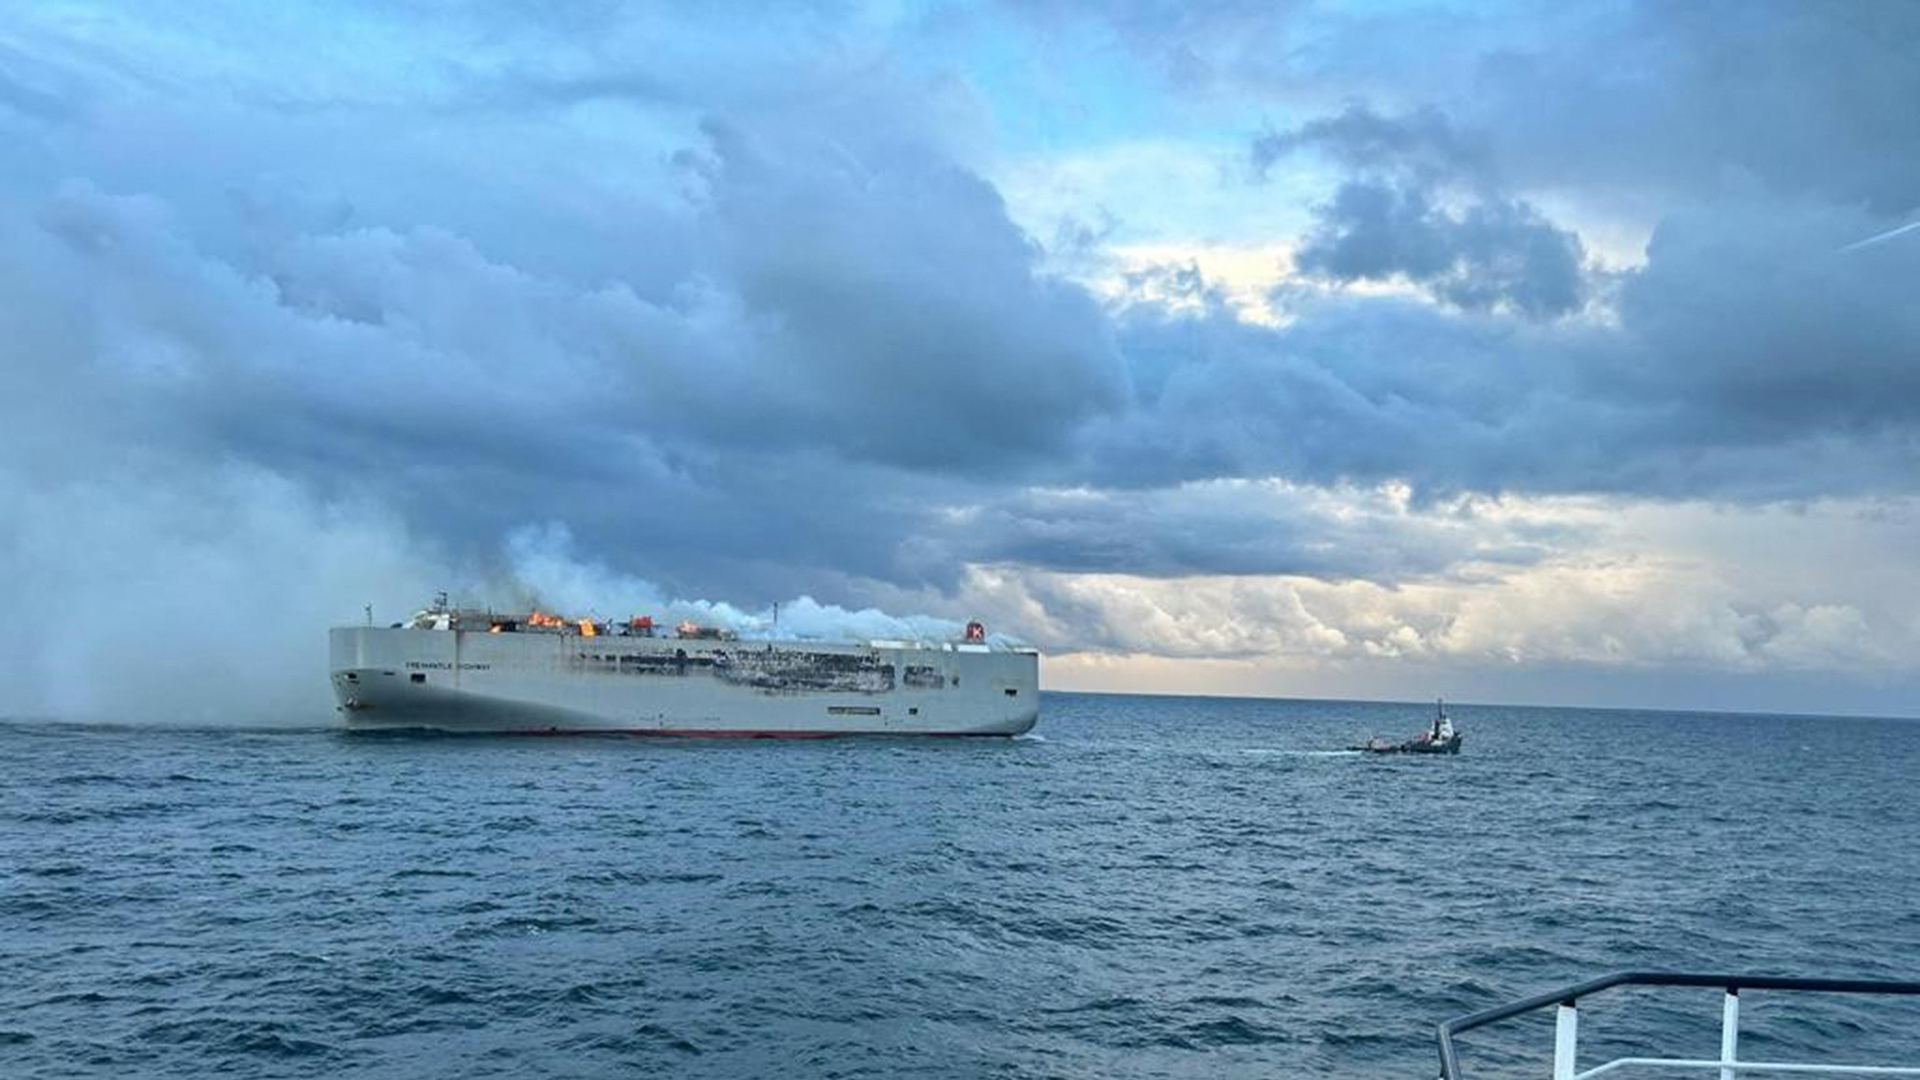 Das Brennendes Frachtschiff "Fremantle Highway" hat Kräne der Zweibrücker Firma Tadano gelade (Foto: dpa Bildfunk, picture alliance/dpa/Küstenwache der Niederlande | Flugzeug der Küstenwache)